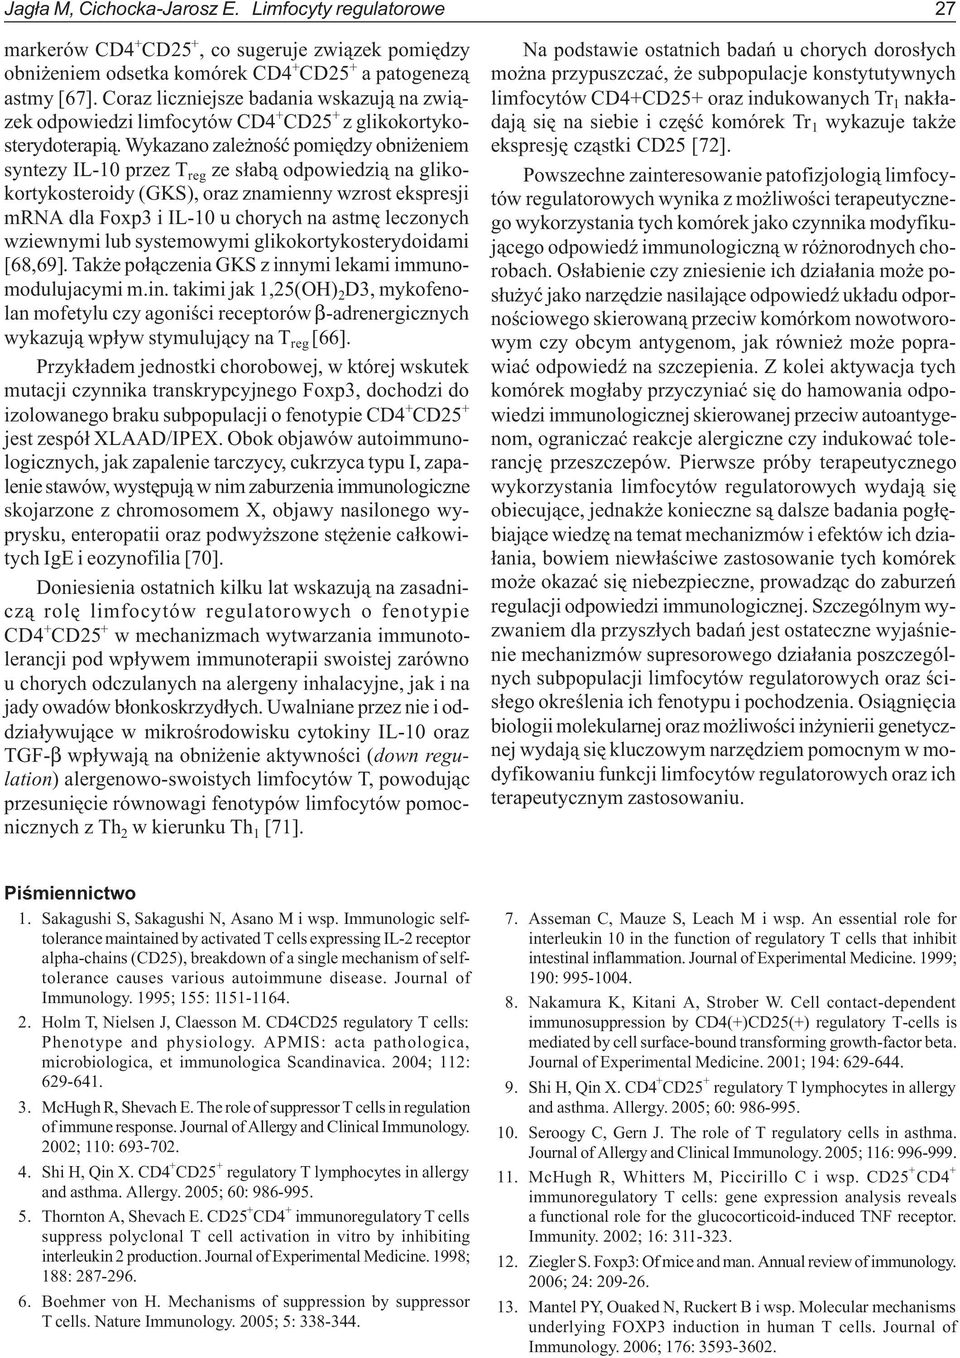 Wykazano zale noœæ pomiêdzy obni eniem syntezy IL-10 przez T reg ze s³ab¹ odpowiedzi¹ na glikokortykosteroidy (GKS), oraz znamienny wzrost ekspresji mrna dla Foxp3 i IL-10 u chorych na astmê